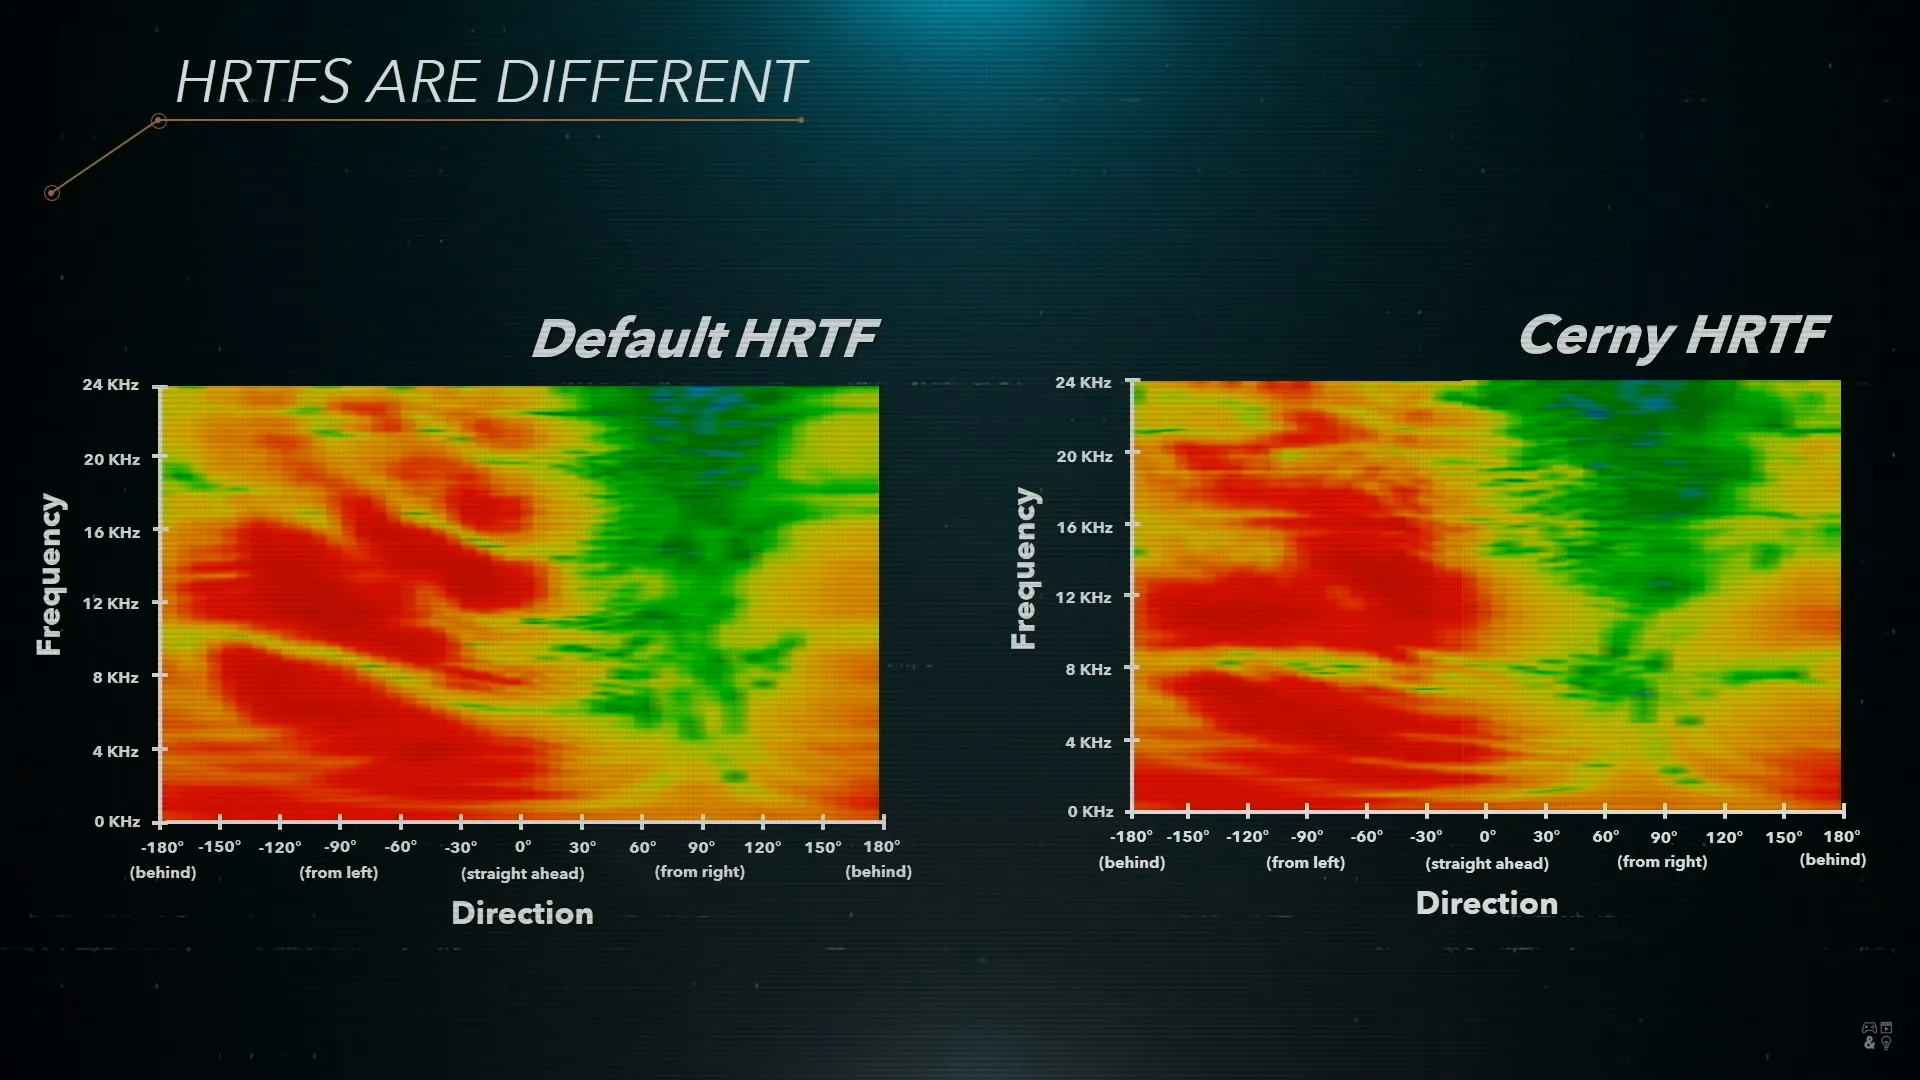 索尼所测量的HRTF实例。左侧为默认HRTF，右侧是架构师Cerny本人的HRTF。